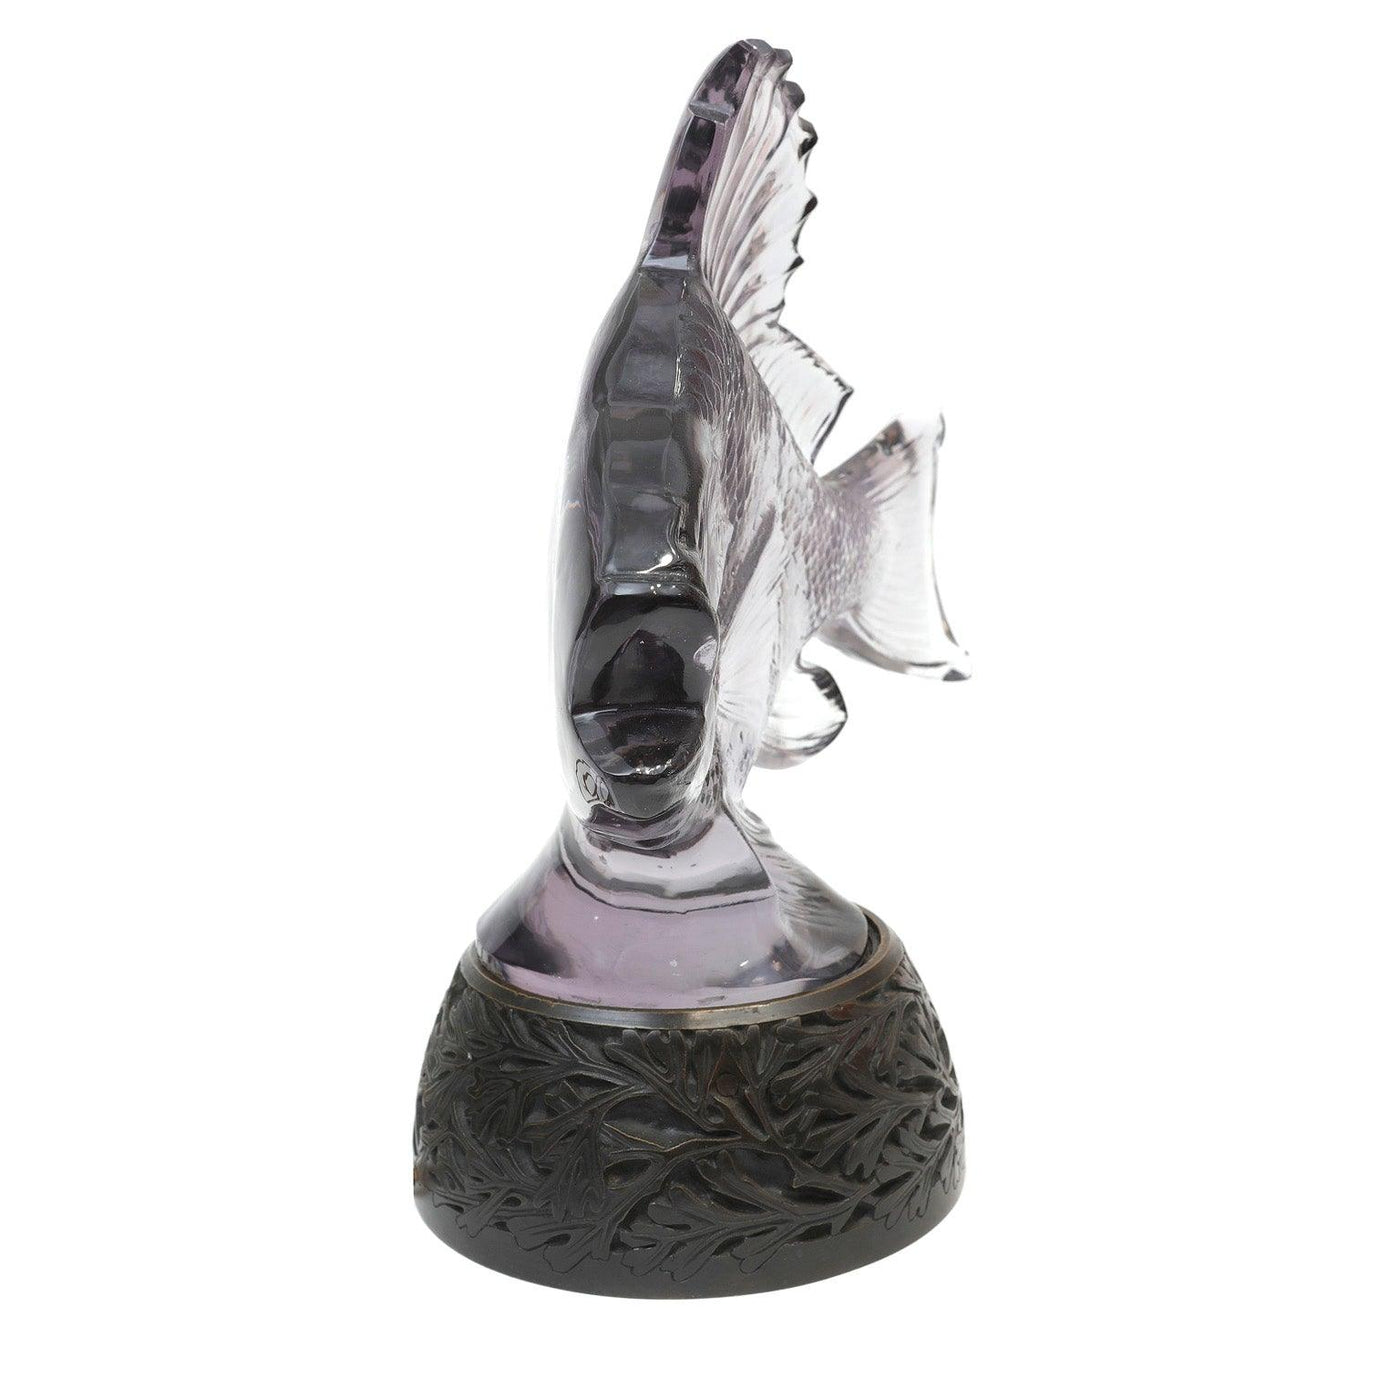 Lalique Glass Fish Sculpture Lamp - Only Authentics